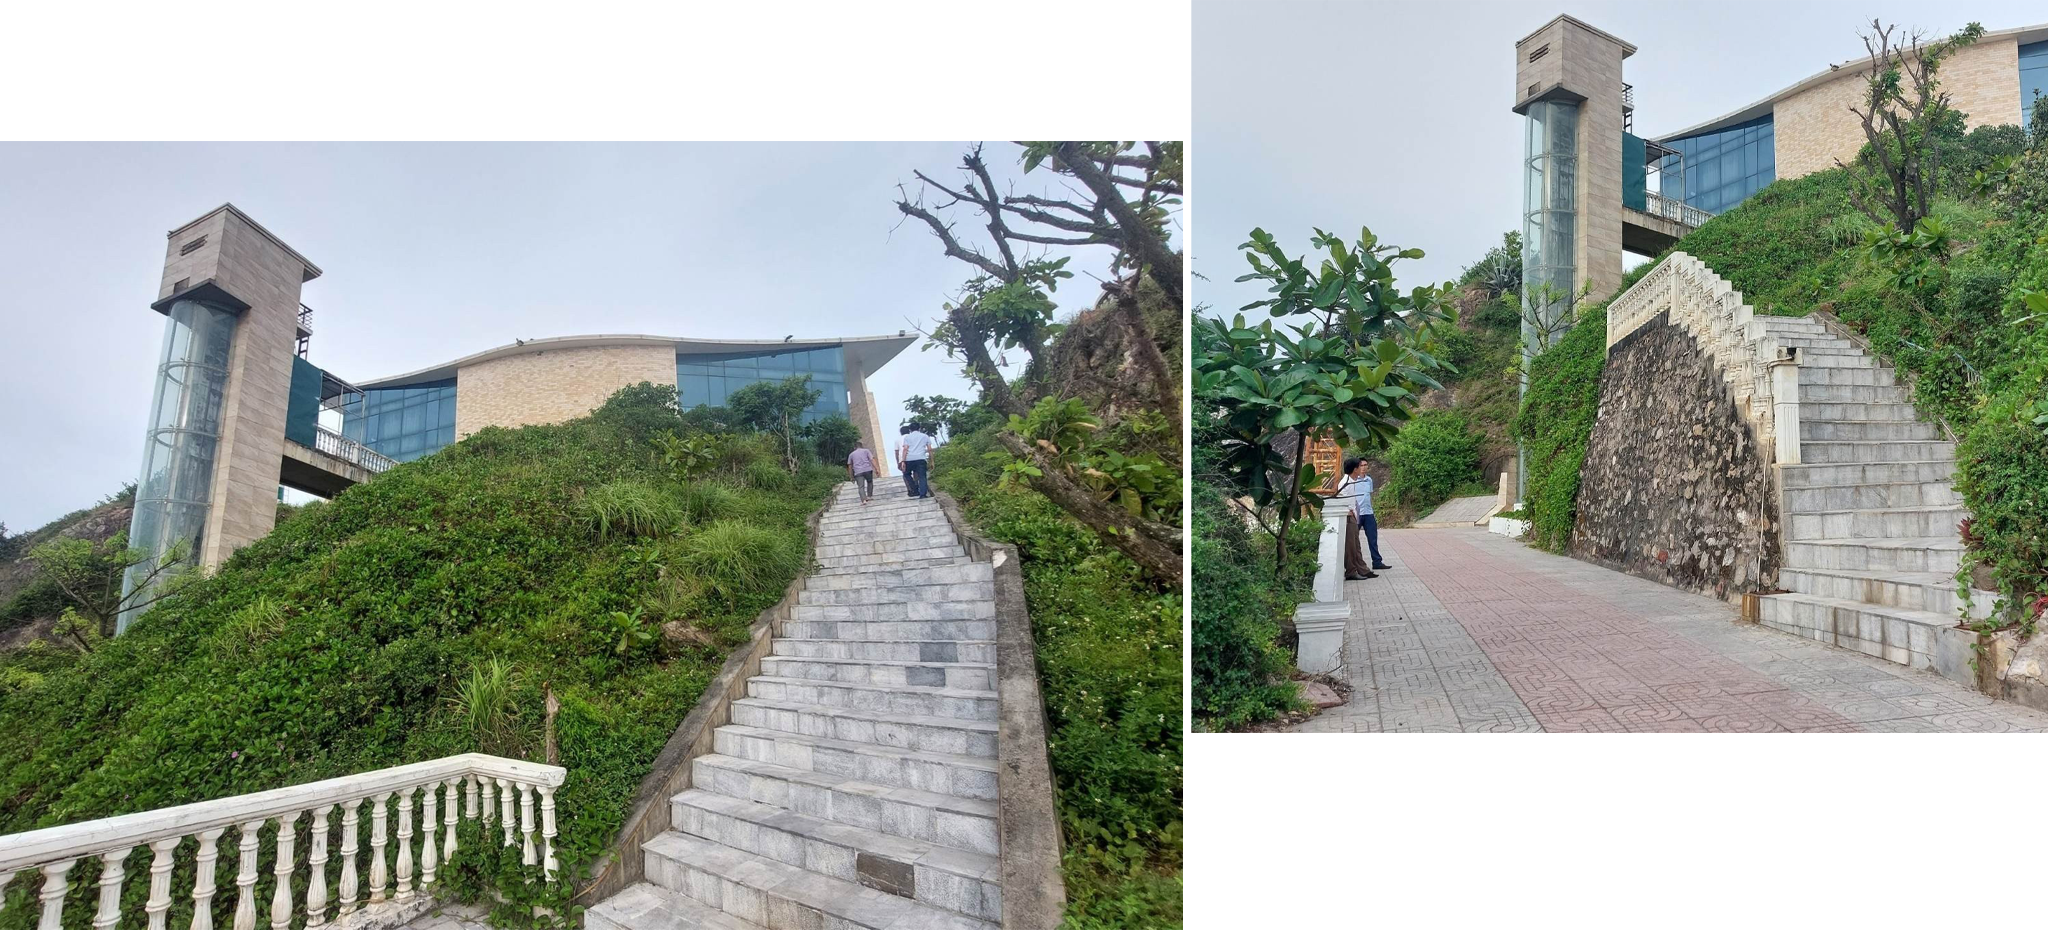 Khối công trình cầu thang máy và tuyến đường lên nhà hàng trên đảo Lan Châu vi phạm quy hoạch.